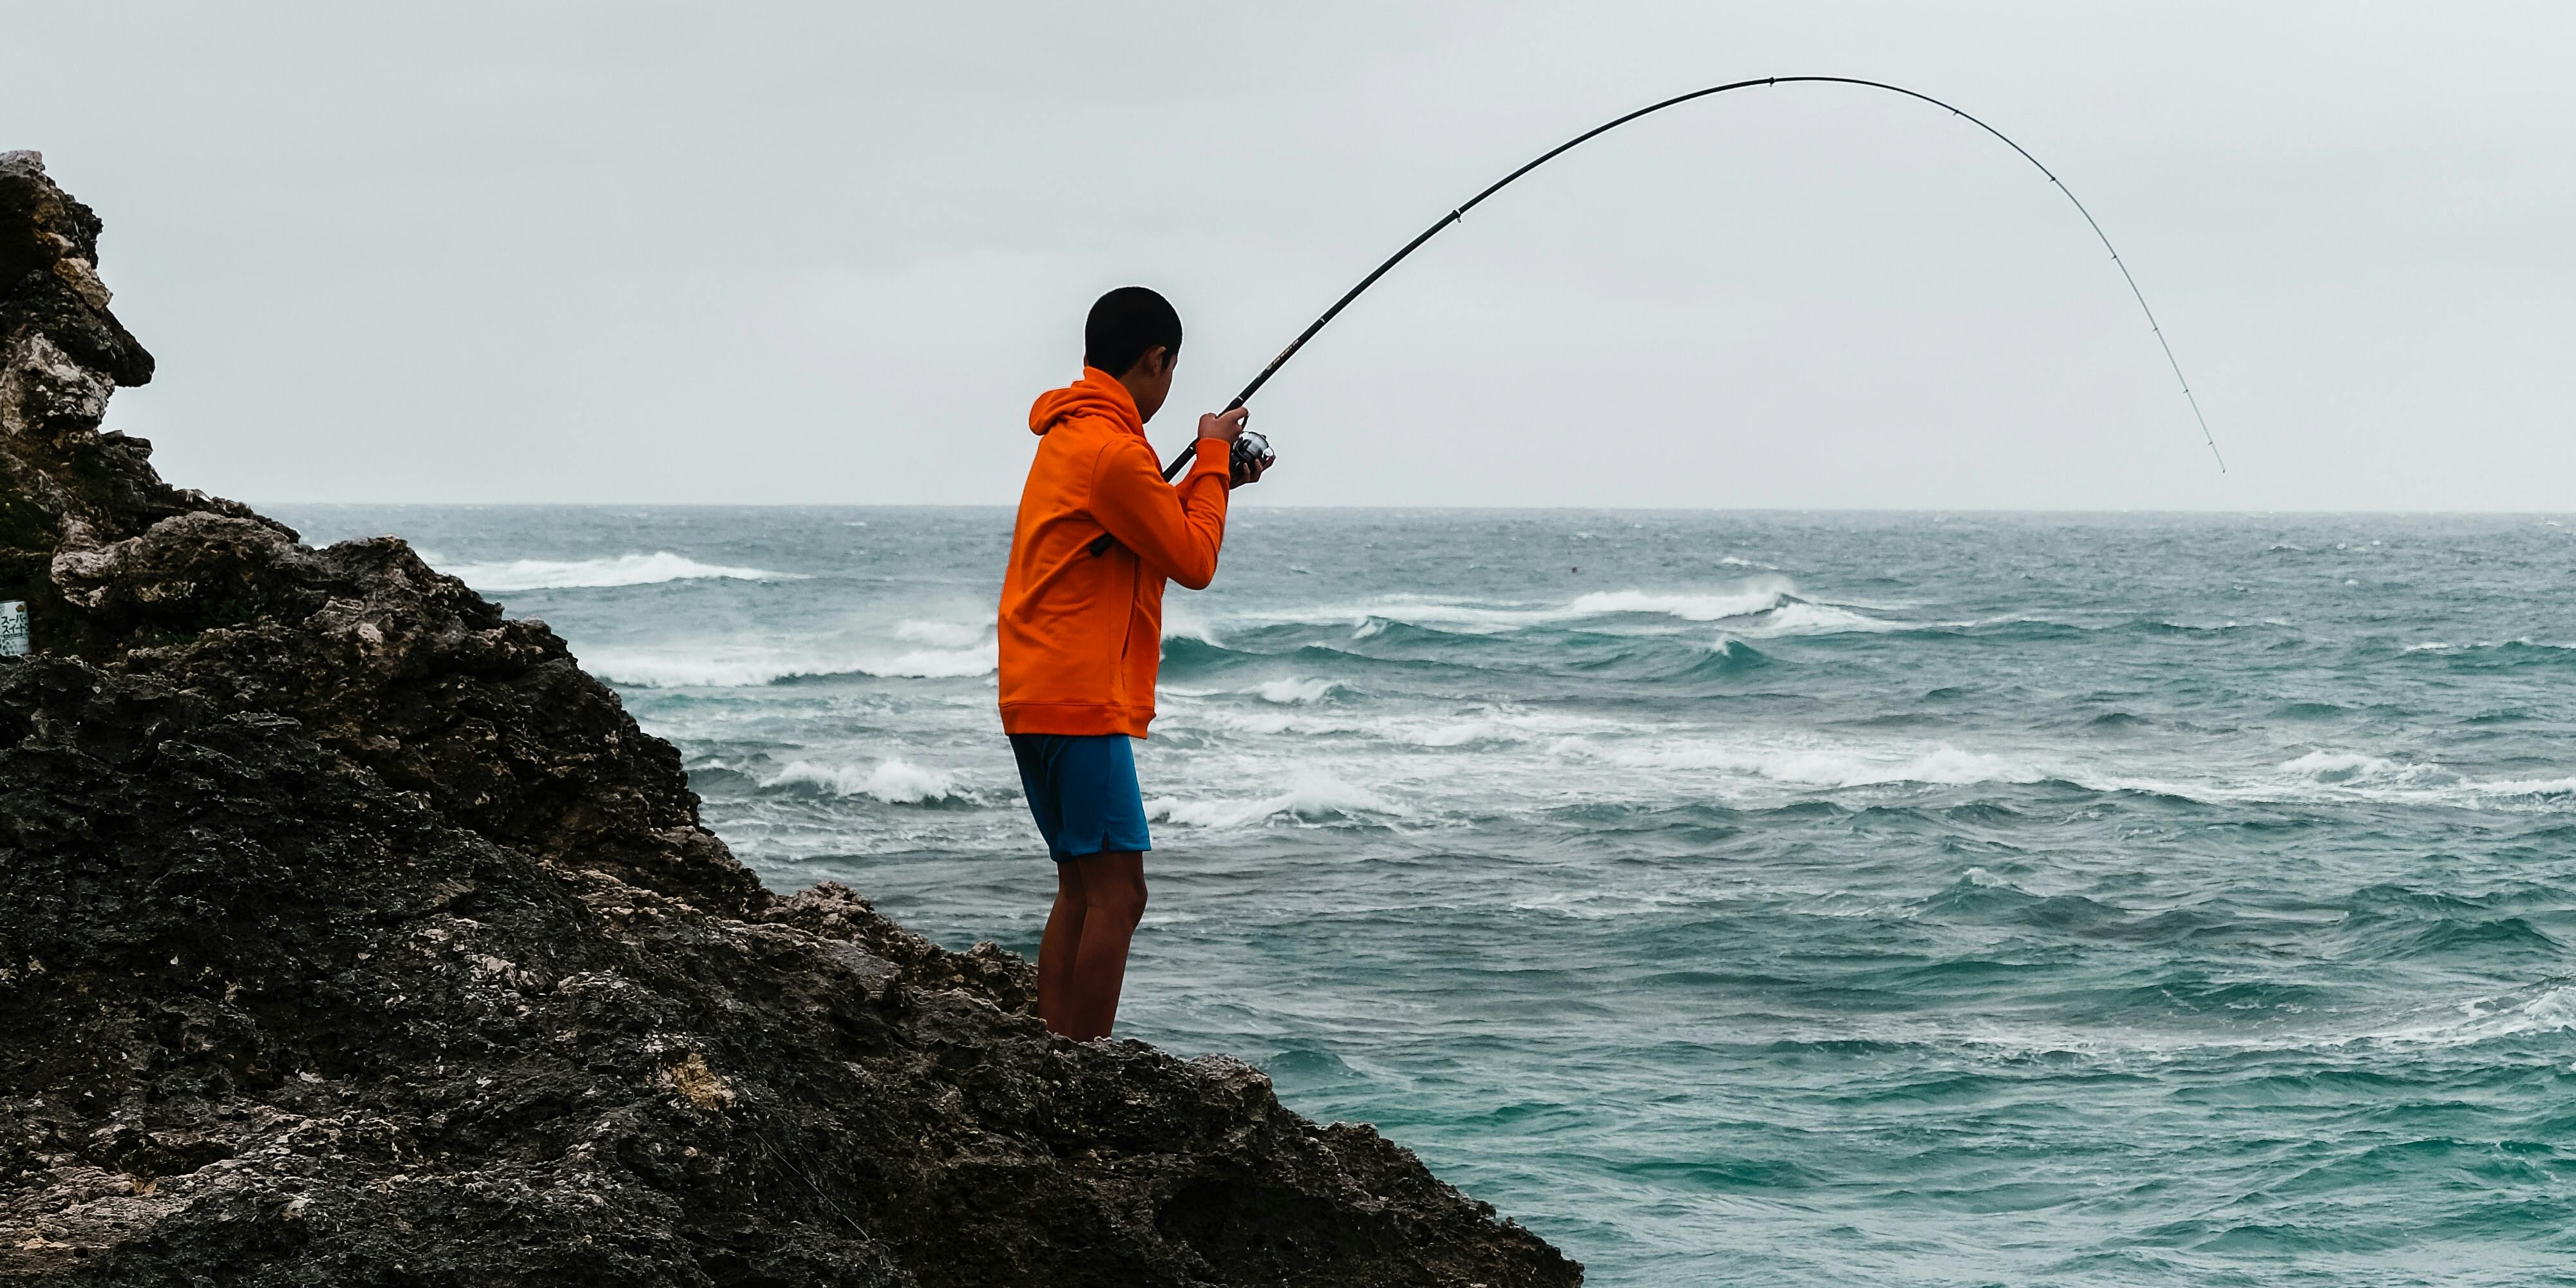 La pêche est le loisir idéal pour se changer les idées au grand air